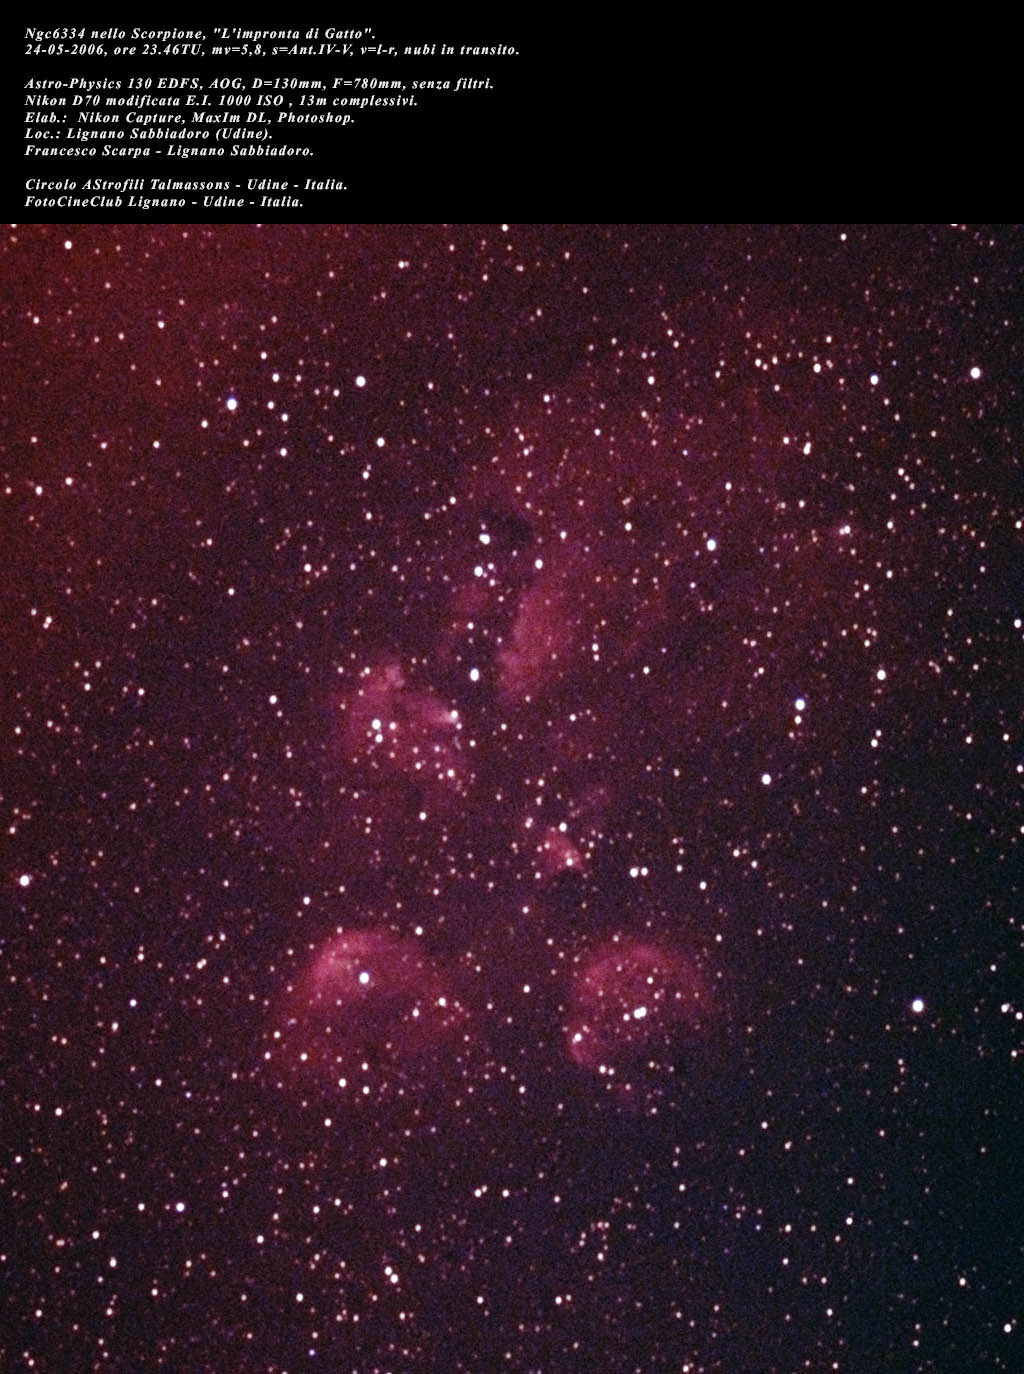 Nebulosa Impronta di Gatto: 185 KB; click the image to enlarge